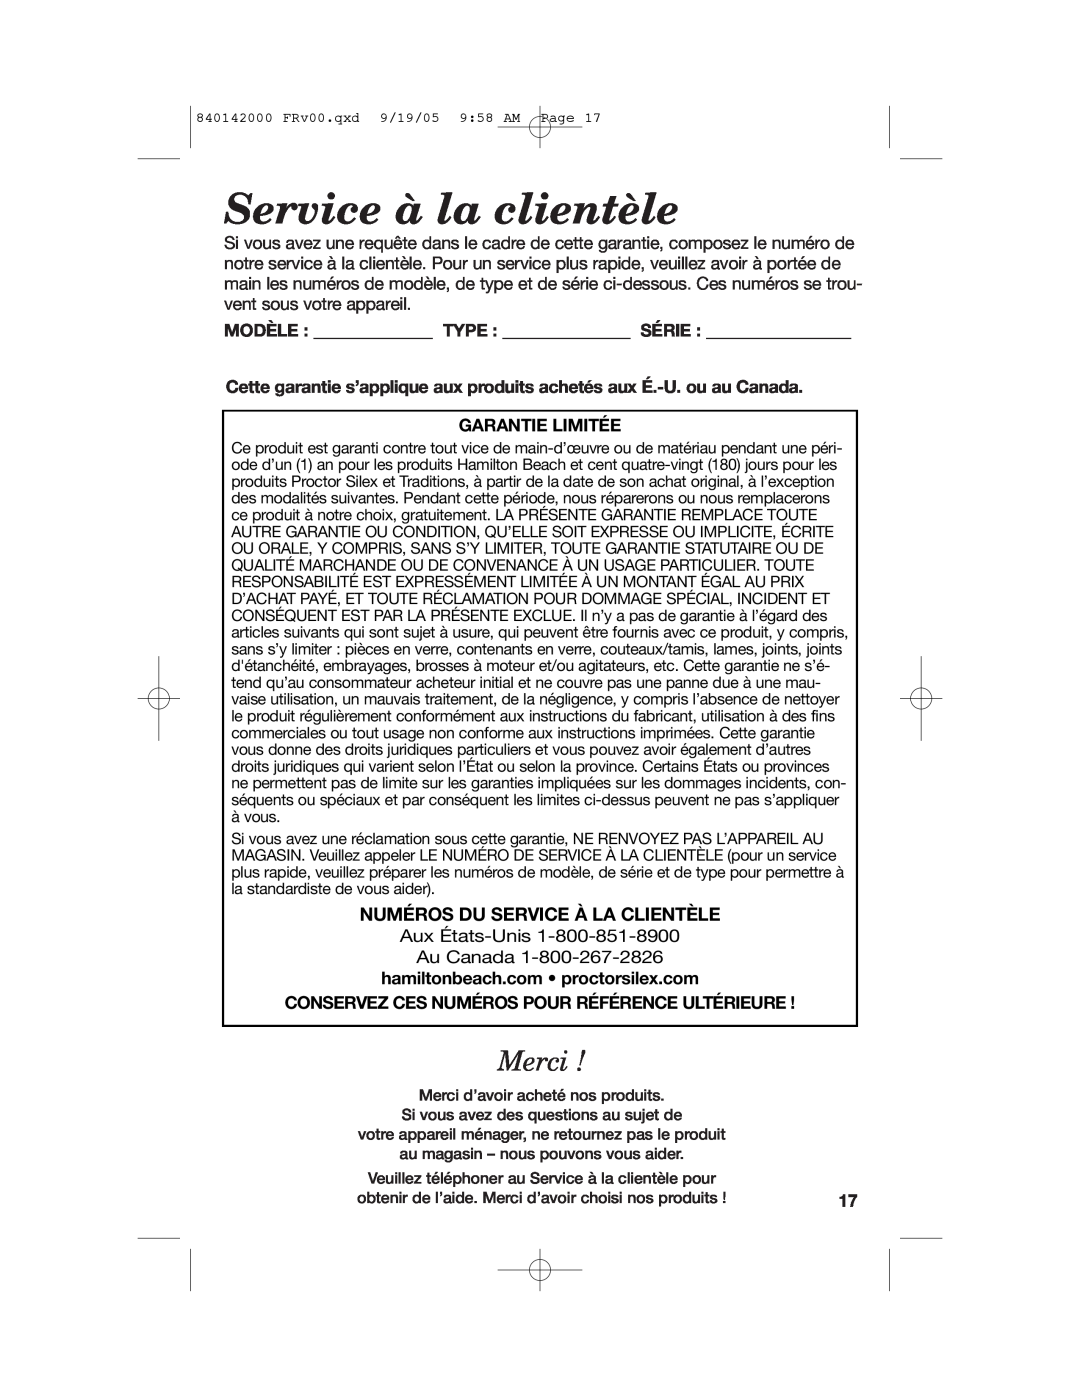 Hamilton Beach 840142000 manual Service à la clientèle, Merci, Numéros Du Service À La Clientèle, Modèle Type Série 